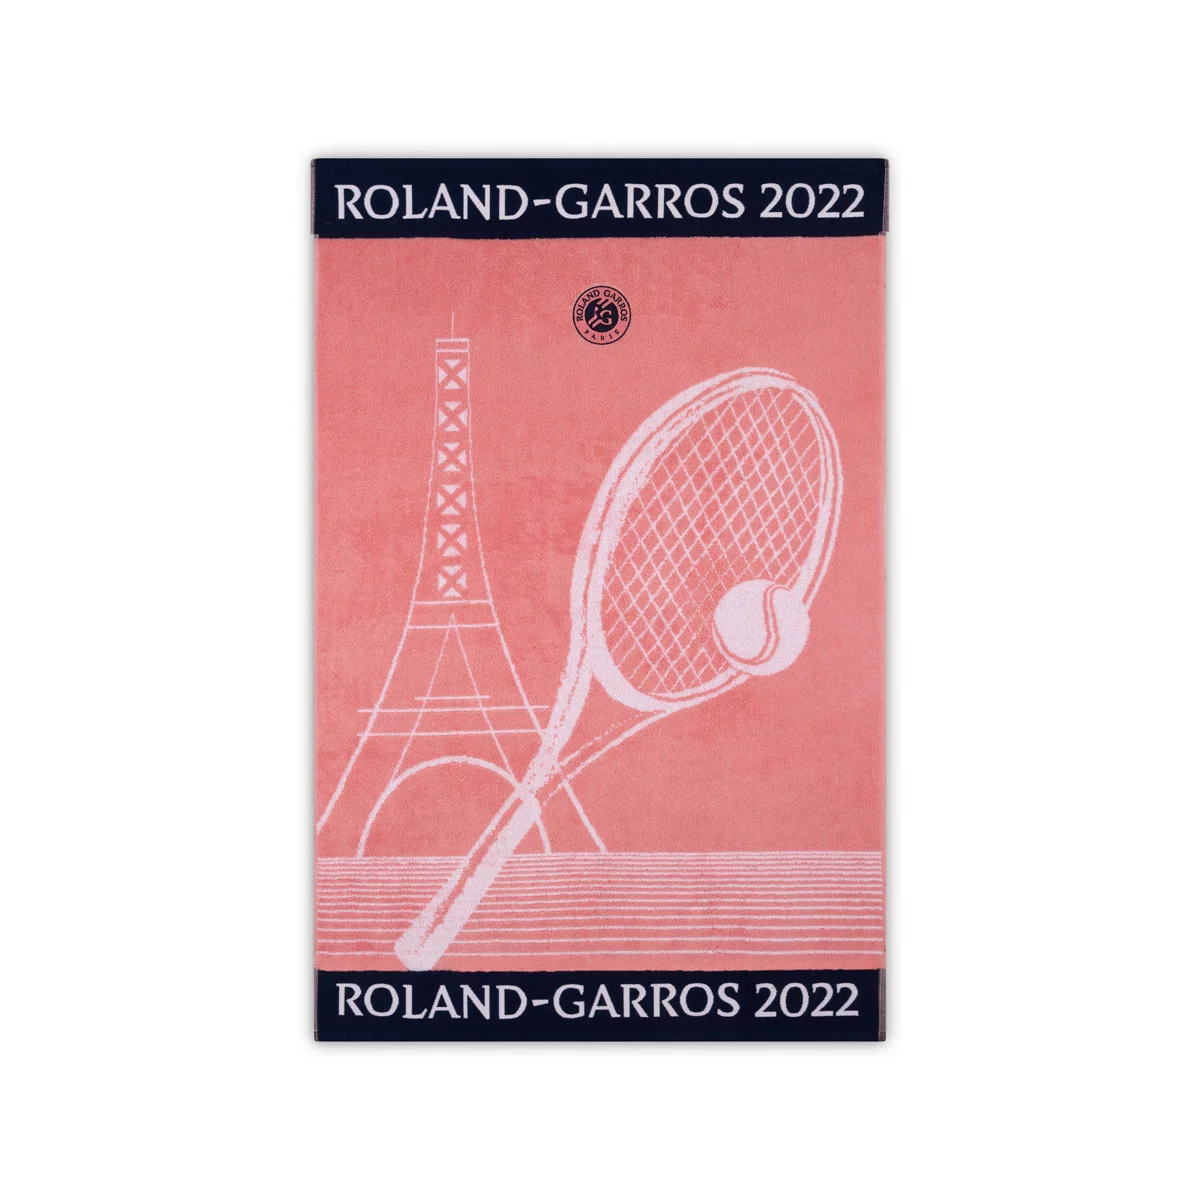 Roland Garros 2022 on Court Lady Tennis Handtuch Sport Handtuch